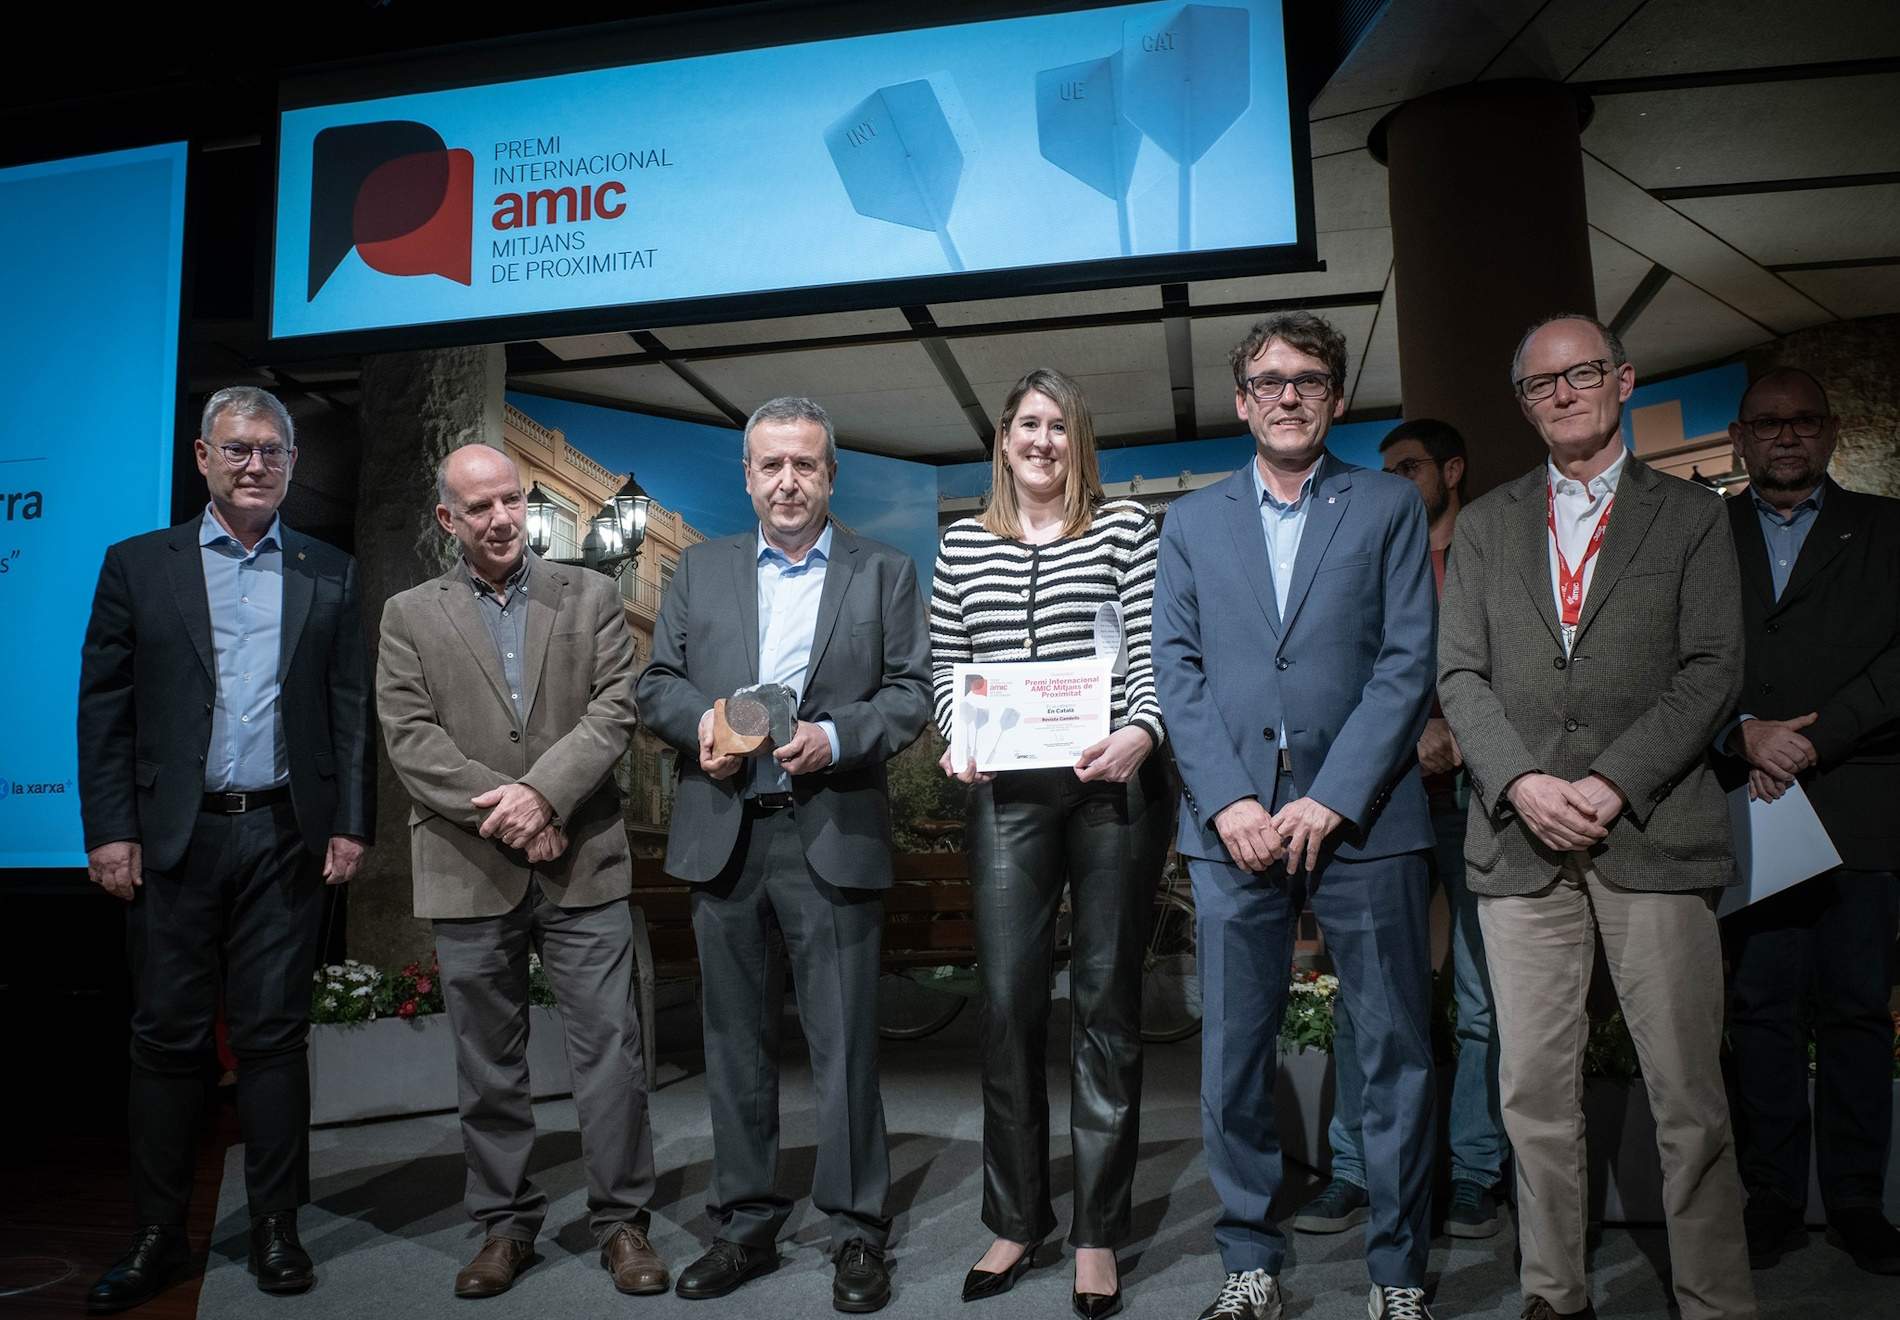 La 'Revista Cambrils' gana el Premi Internacional AMIC Mitjans de Proximitat en lengua catalana